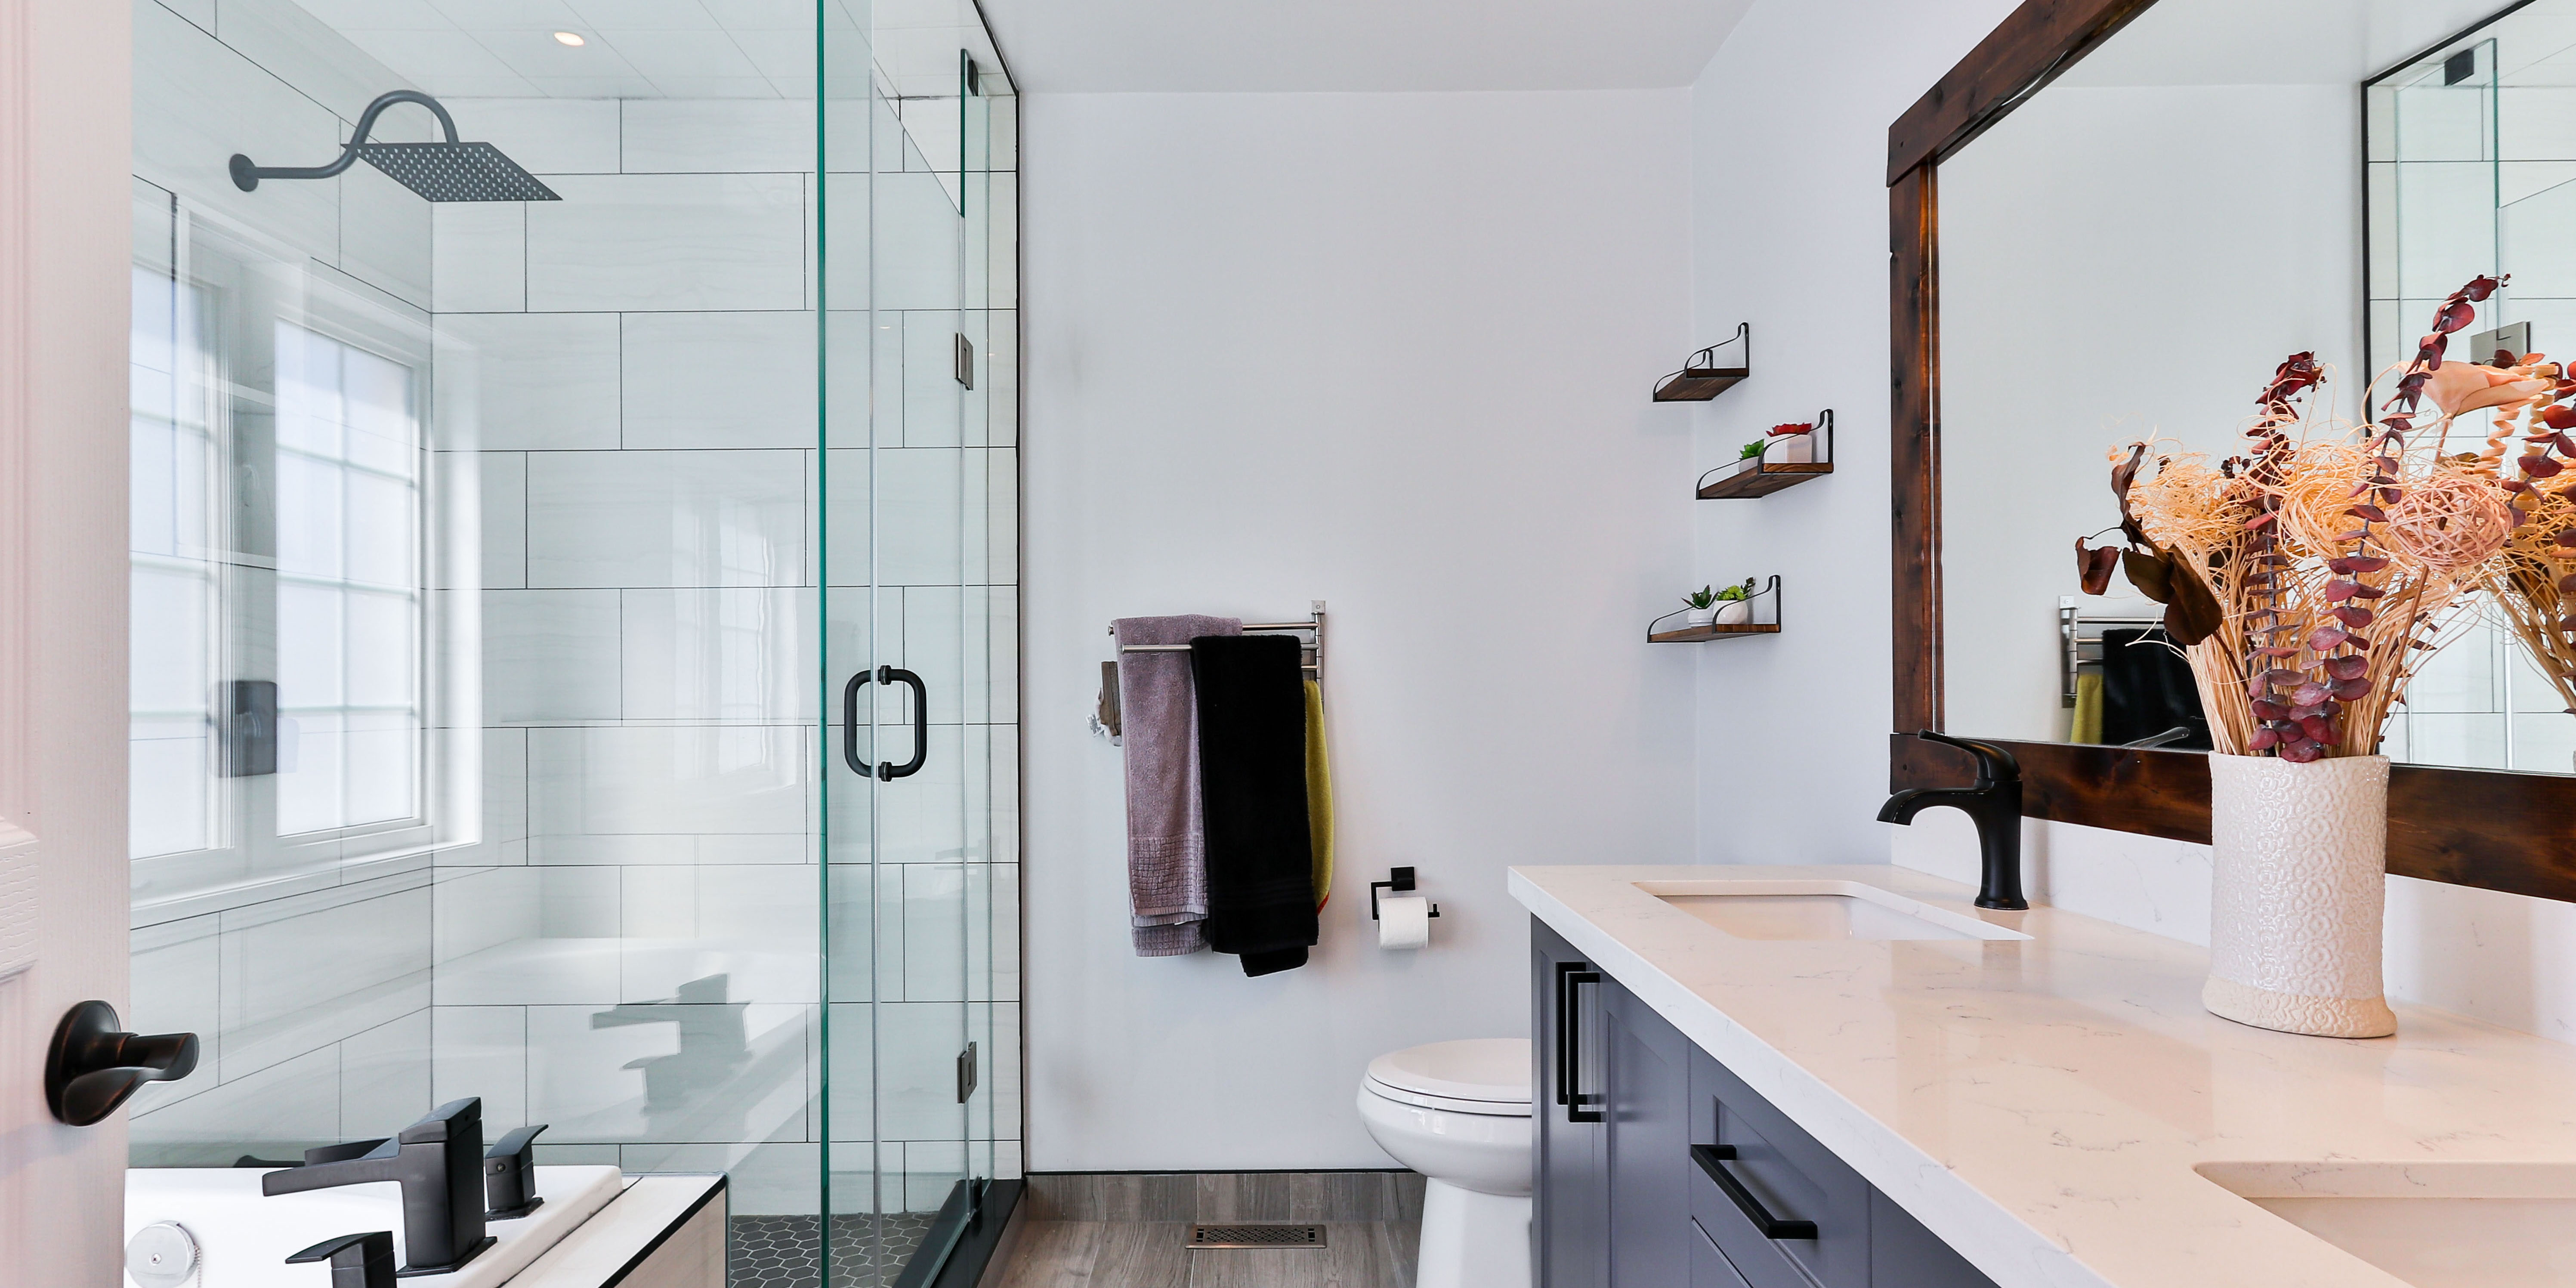 Comment moderniser une salle de bain vieillotte ? 